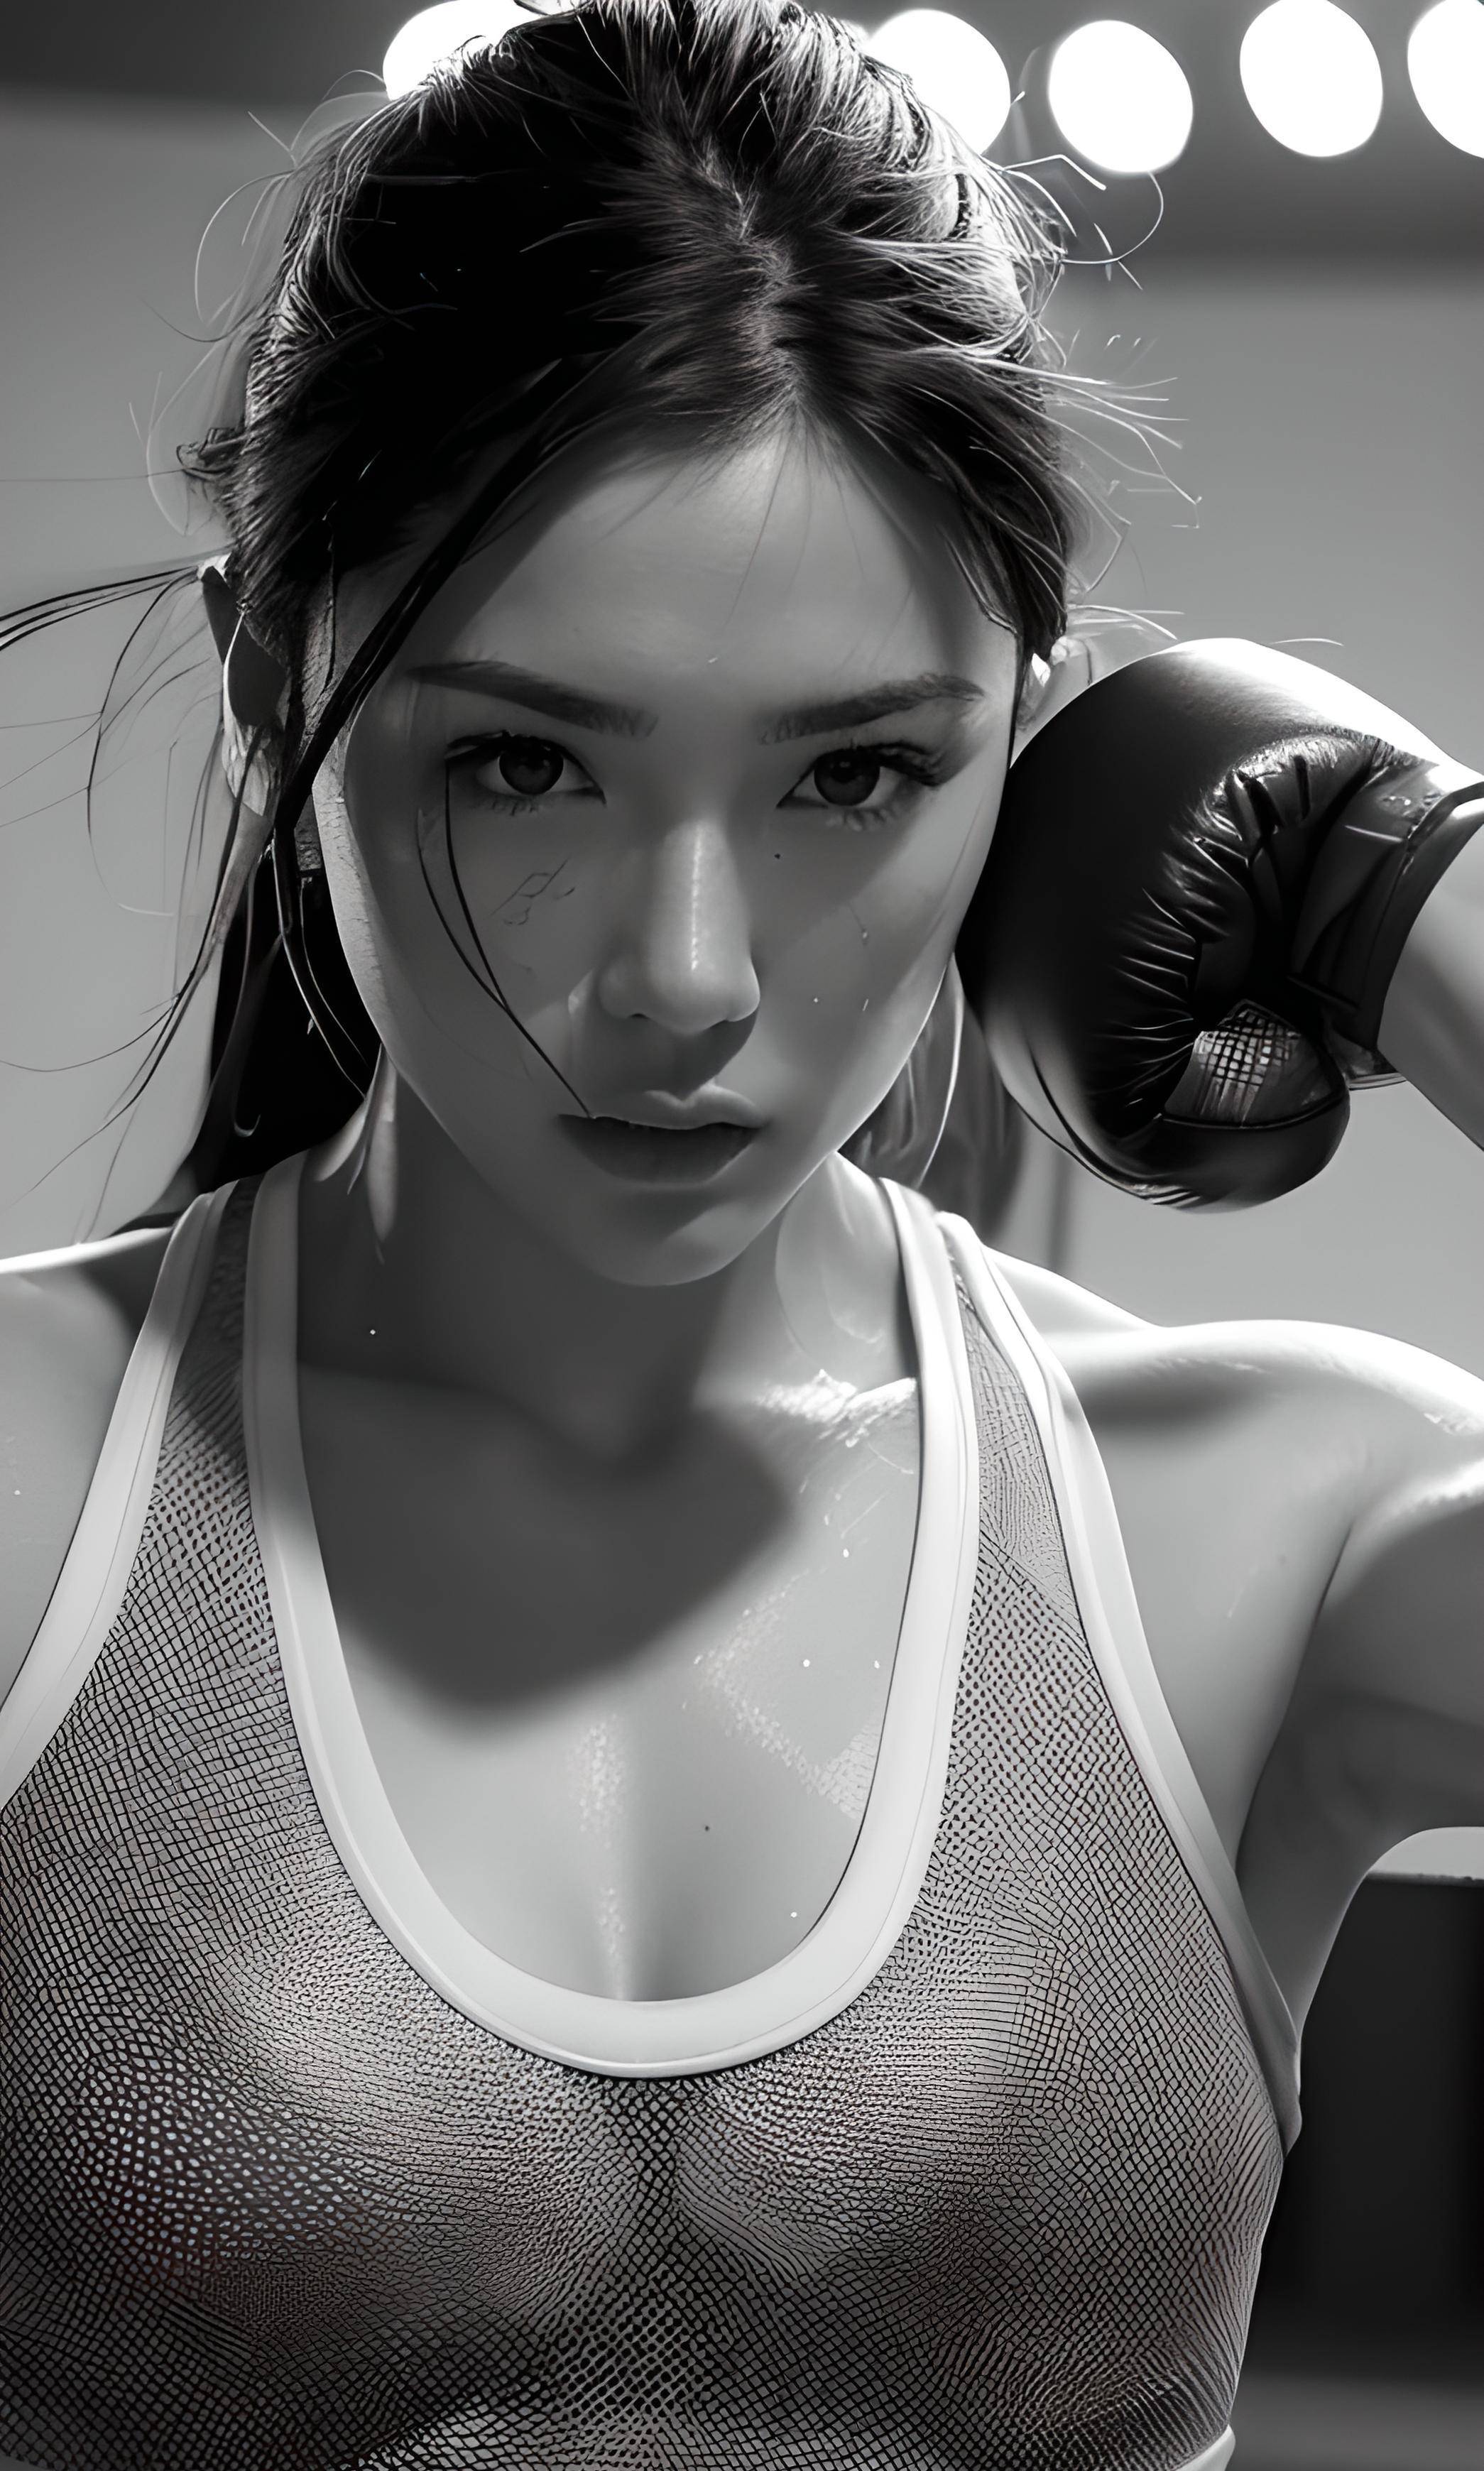 女拳击手用实力和毅力向世界证明女性的力量